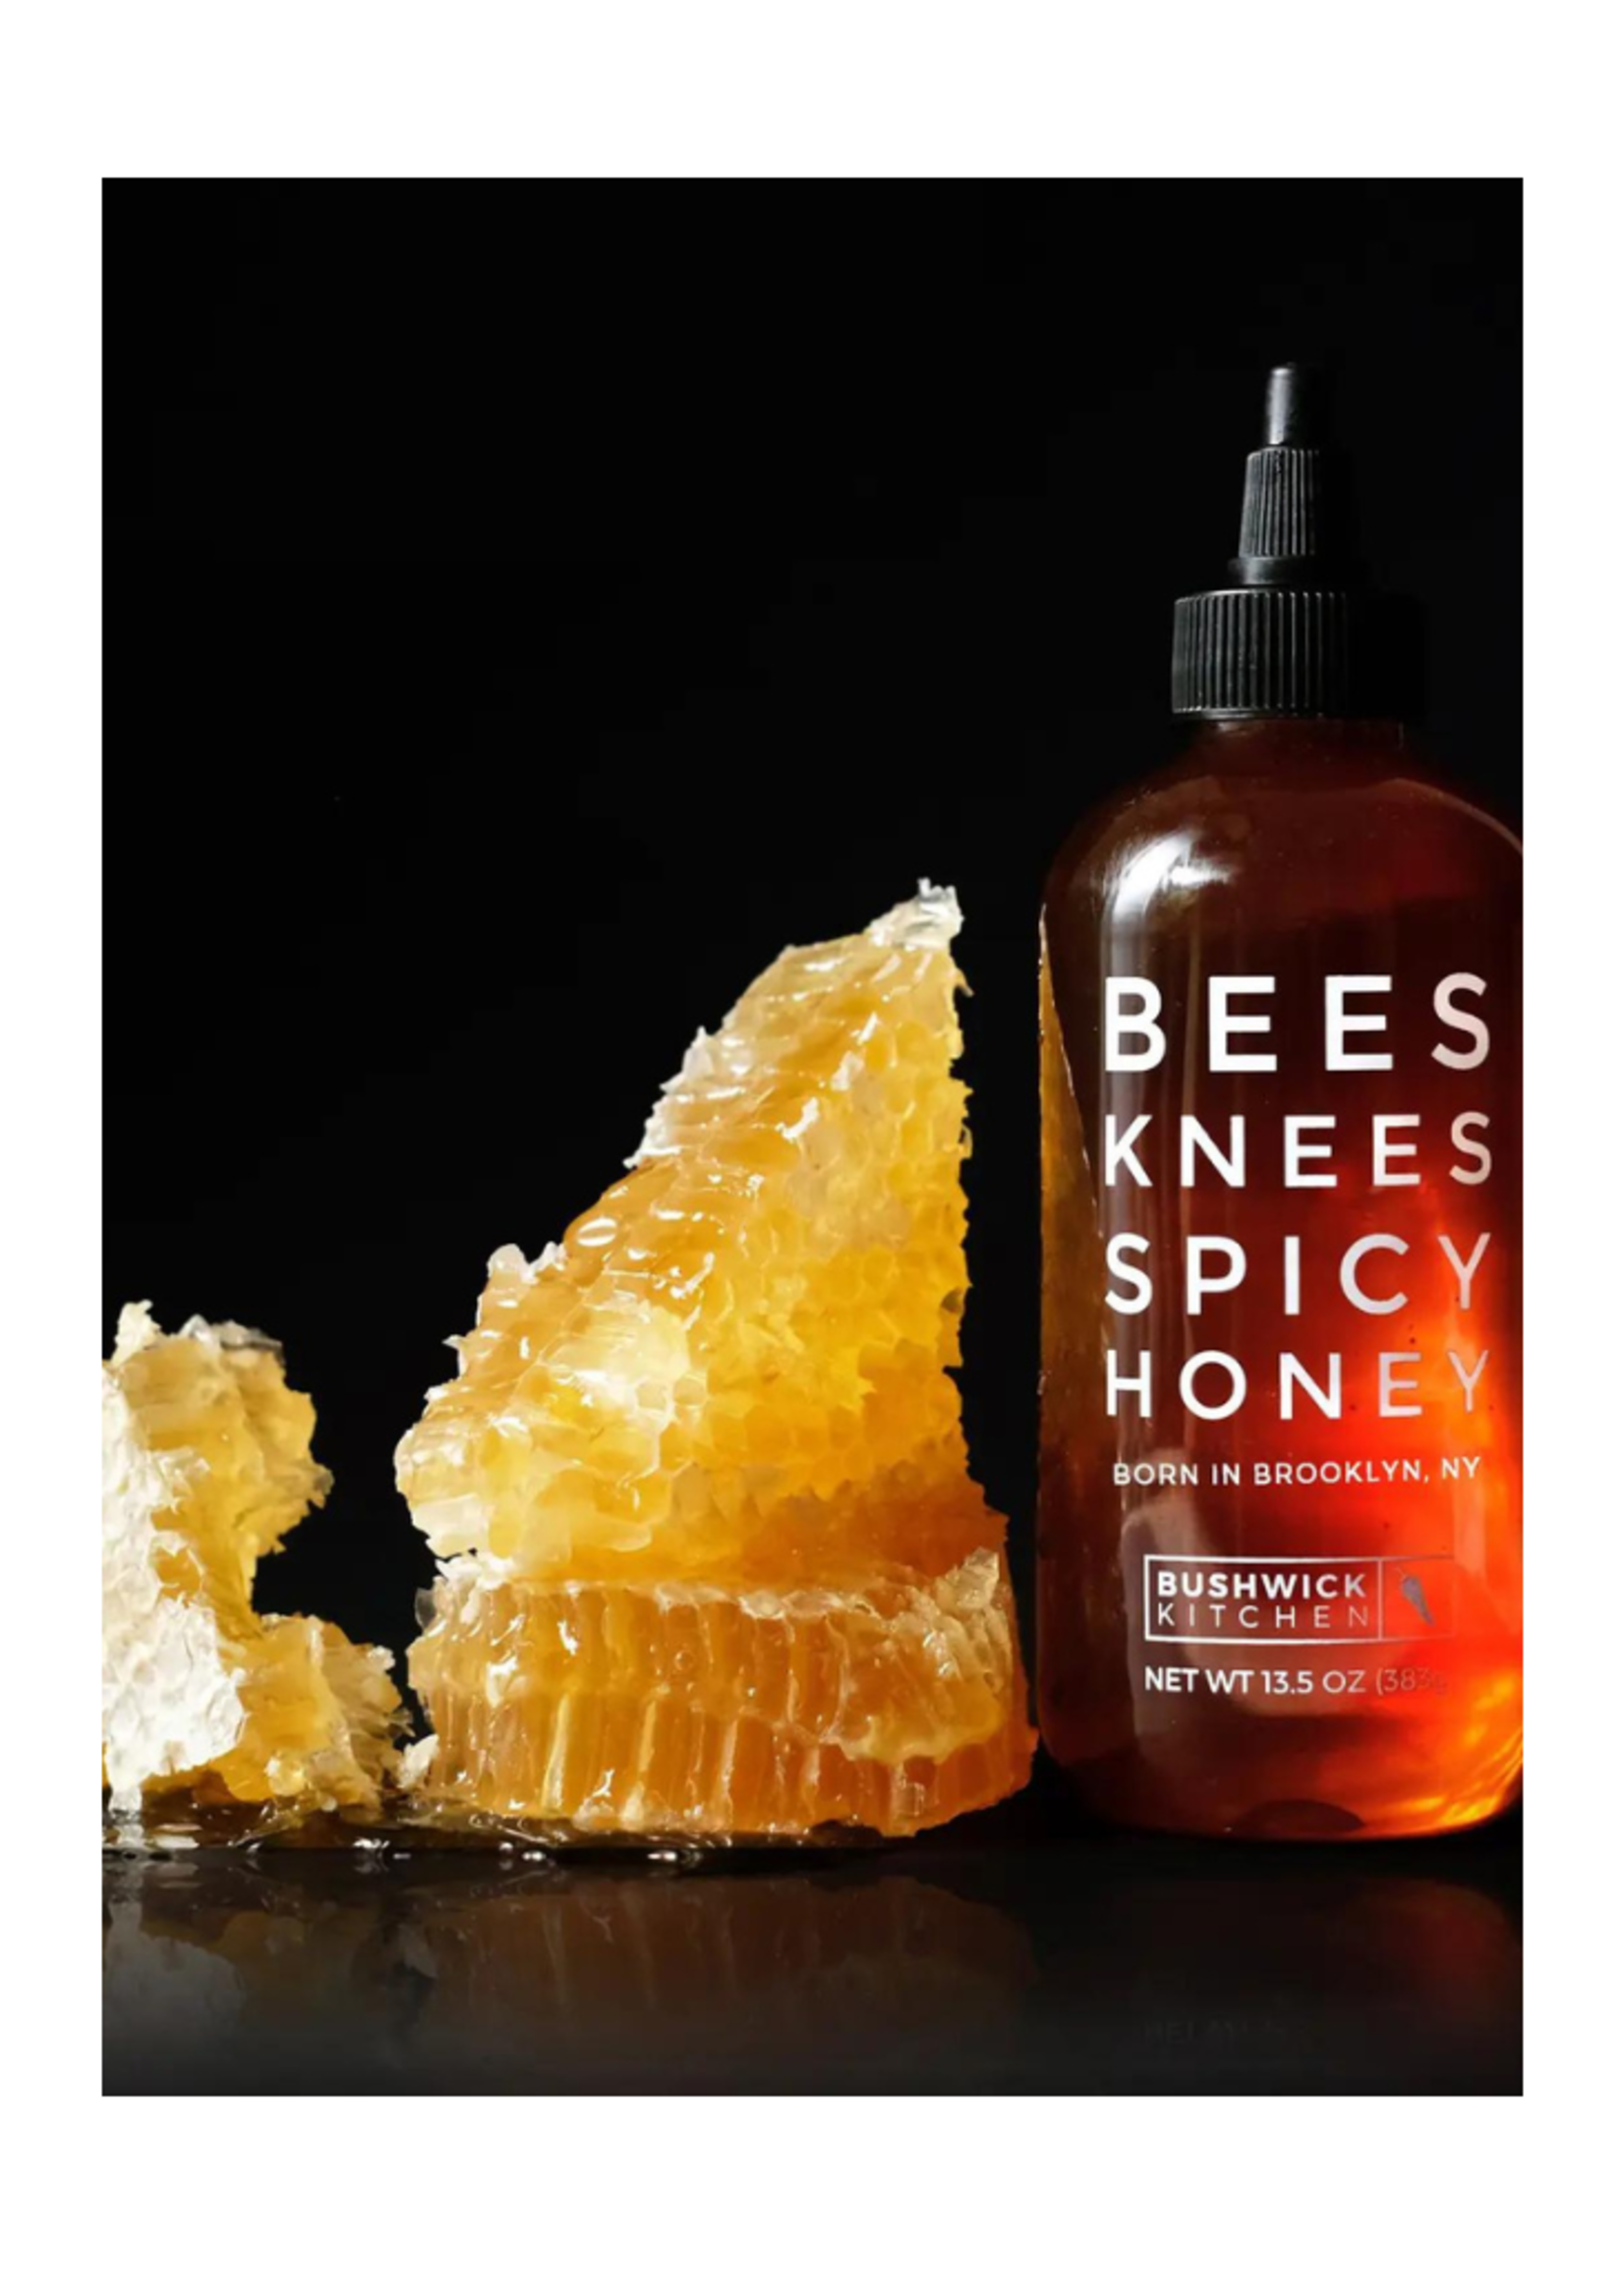 Bushwick Kitchen Bushwick Kitchen - Bees Knees Spicy Honey (Gluten Free)